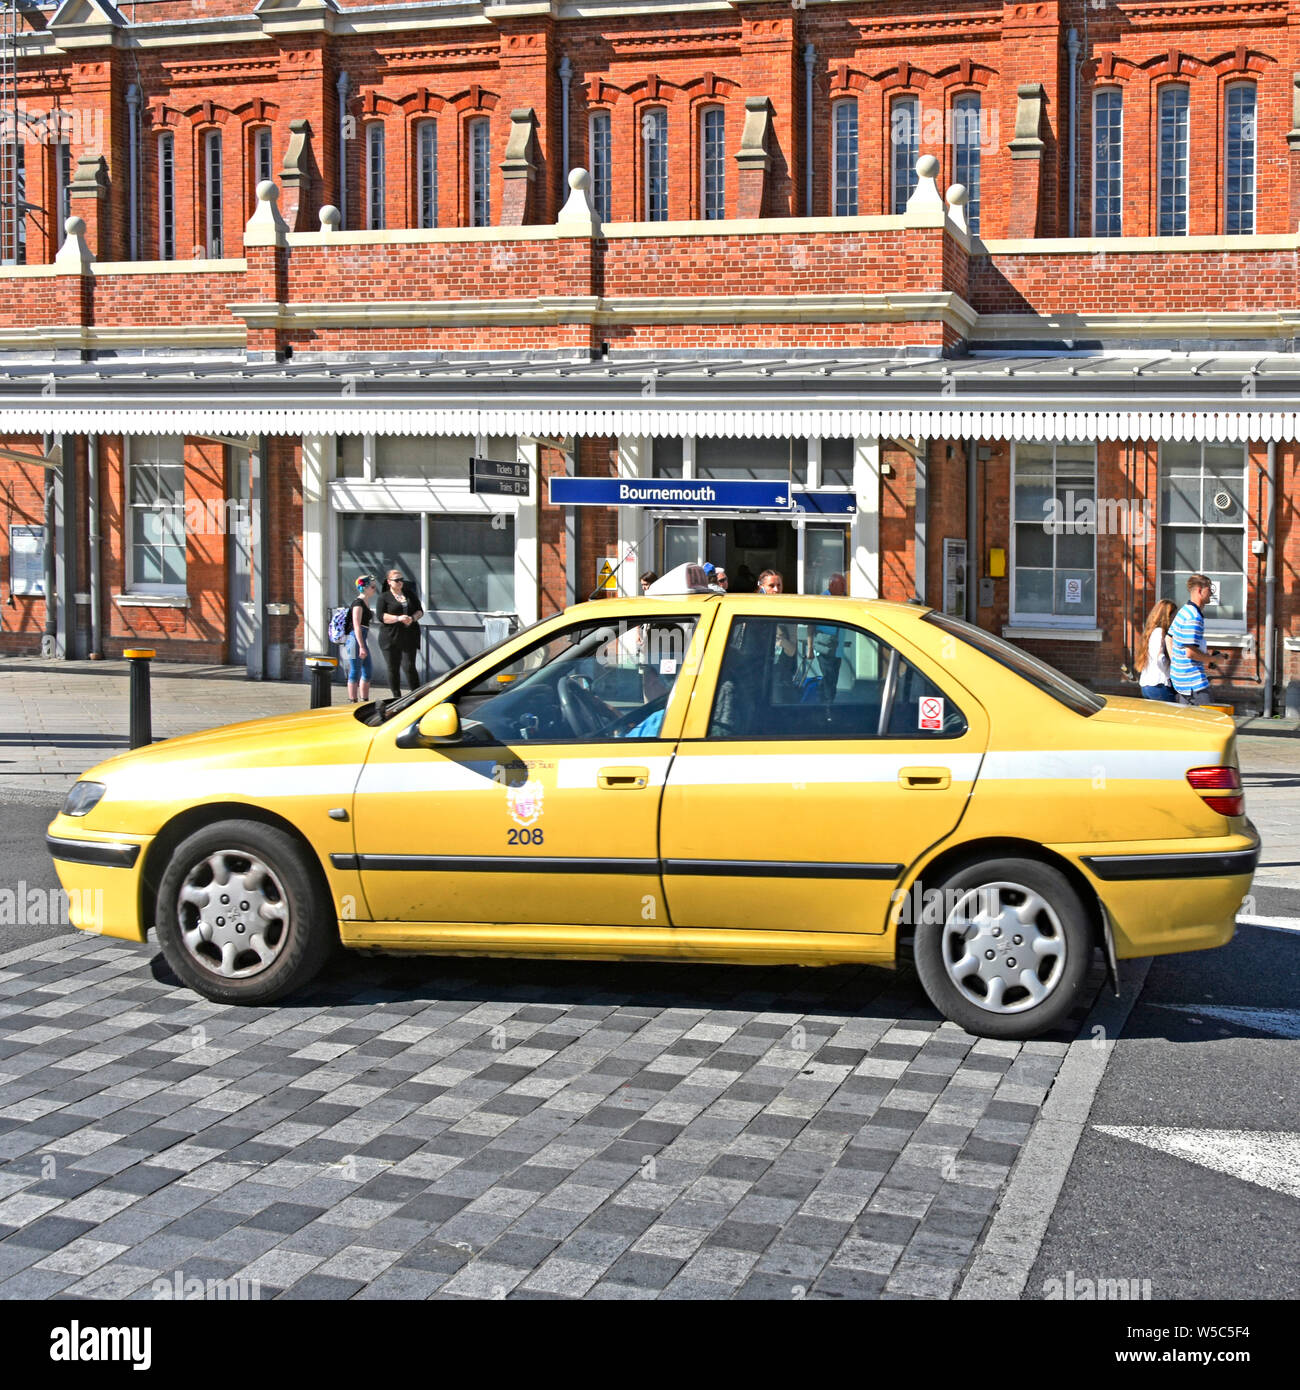 Giallo taxi auto conducente e passeggero attraverso la guida di ciottoli di velocità Hump Bournemouth stazione ferroviaria stazione ferroviaria in stile vittoriano edificio in mattoni di Dorset Regno Unito Inghilterra Foto Stock